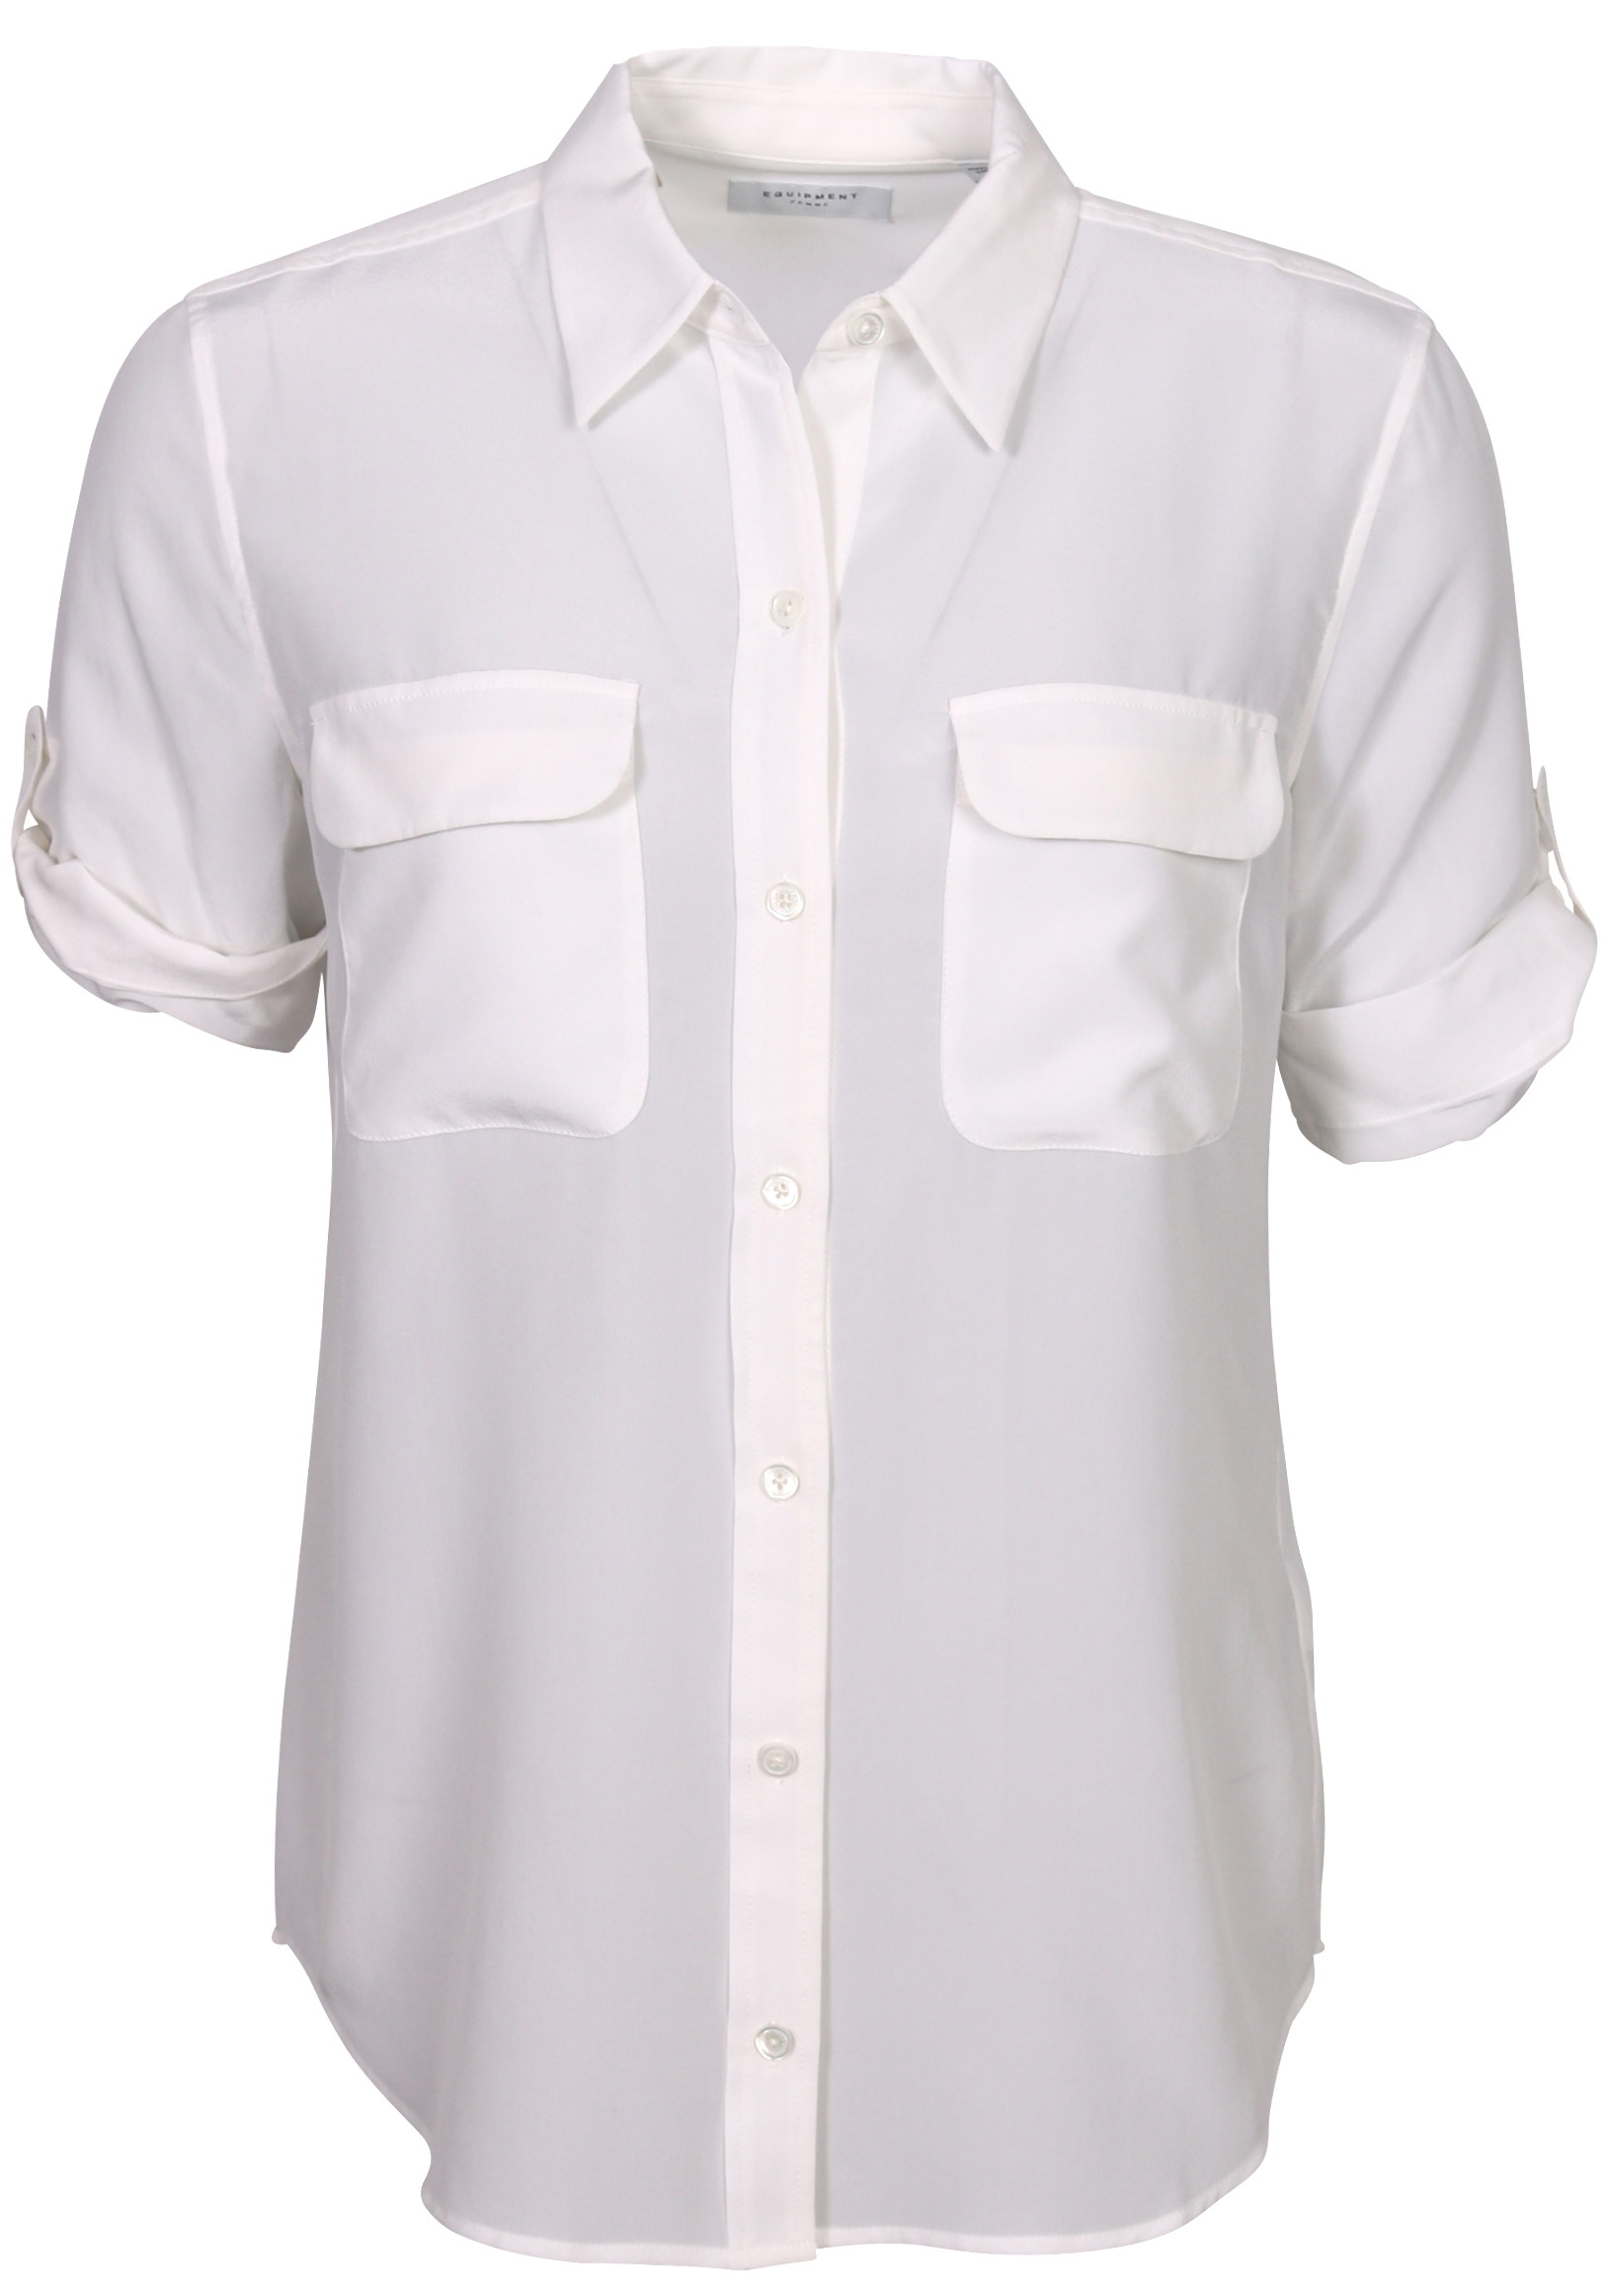 Equipment Short Sleeve Slim Signature Shirt White XS